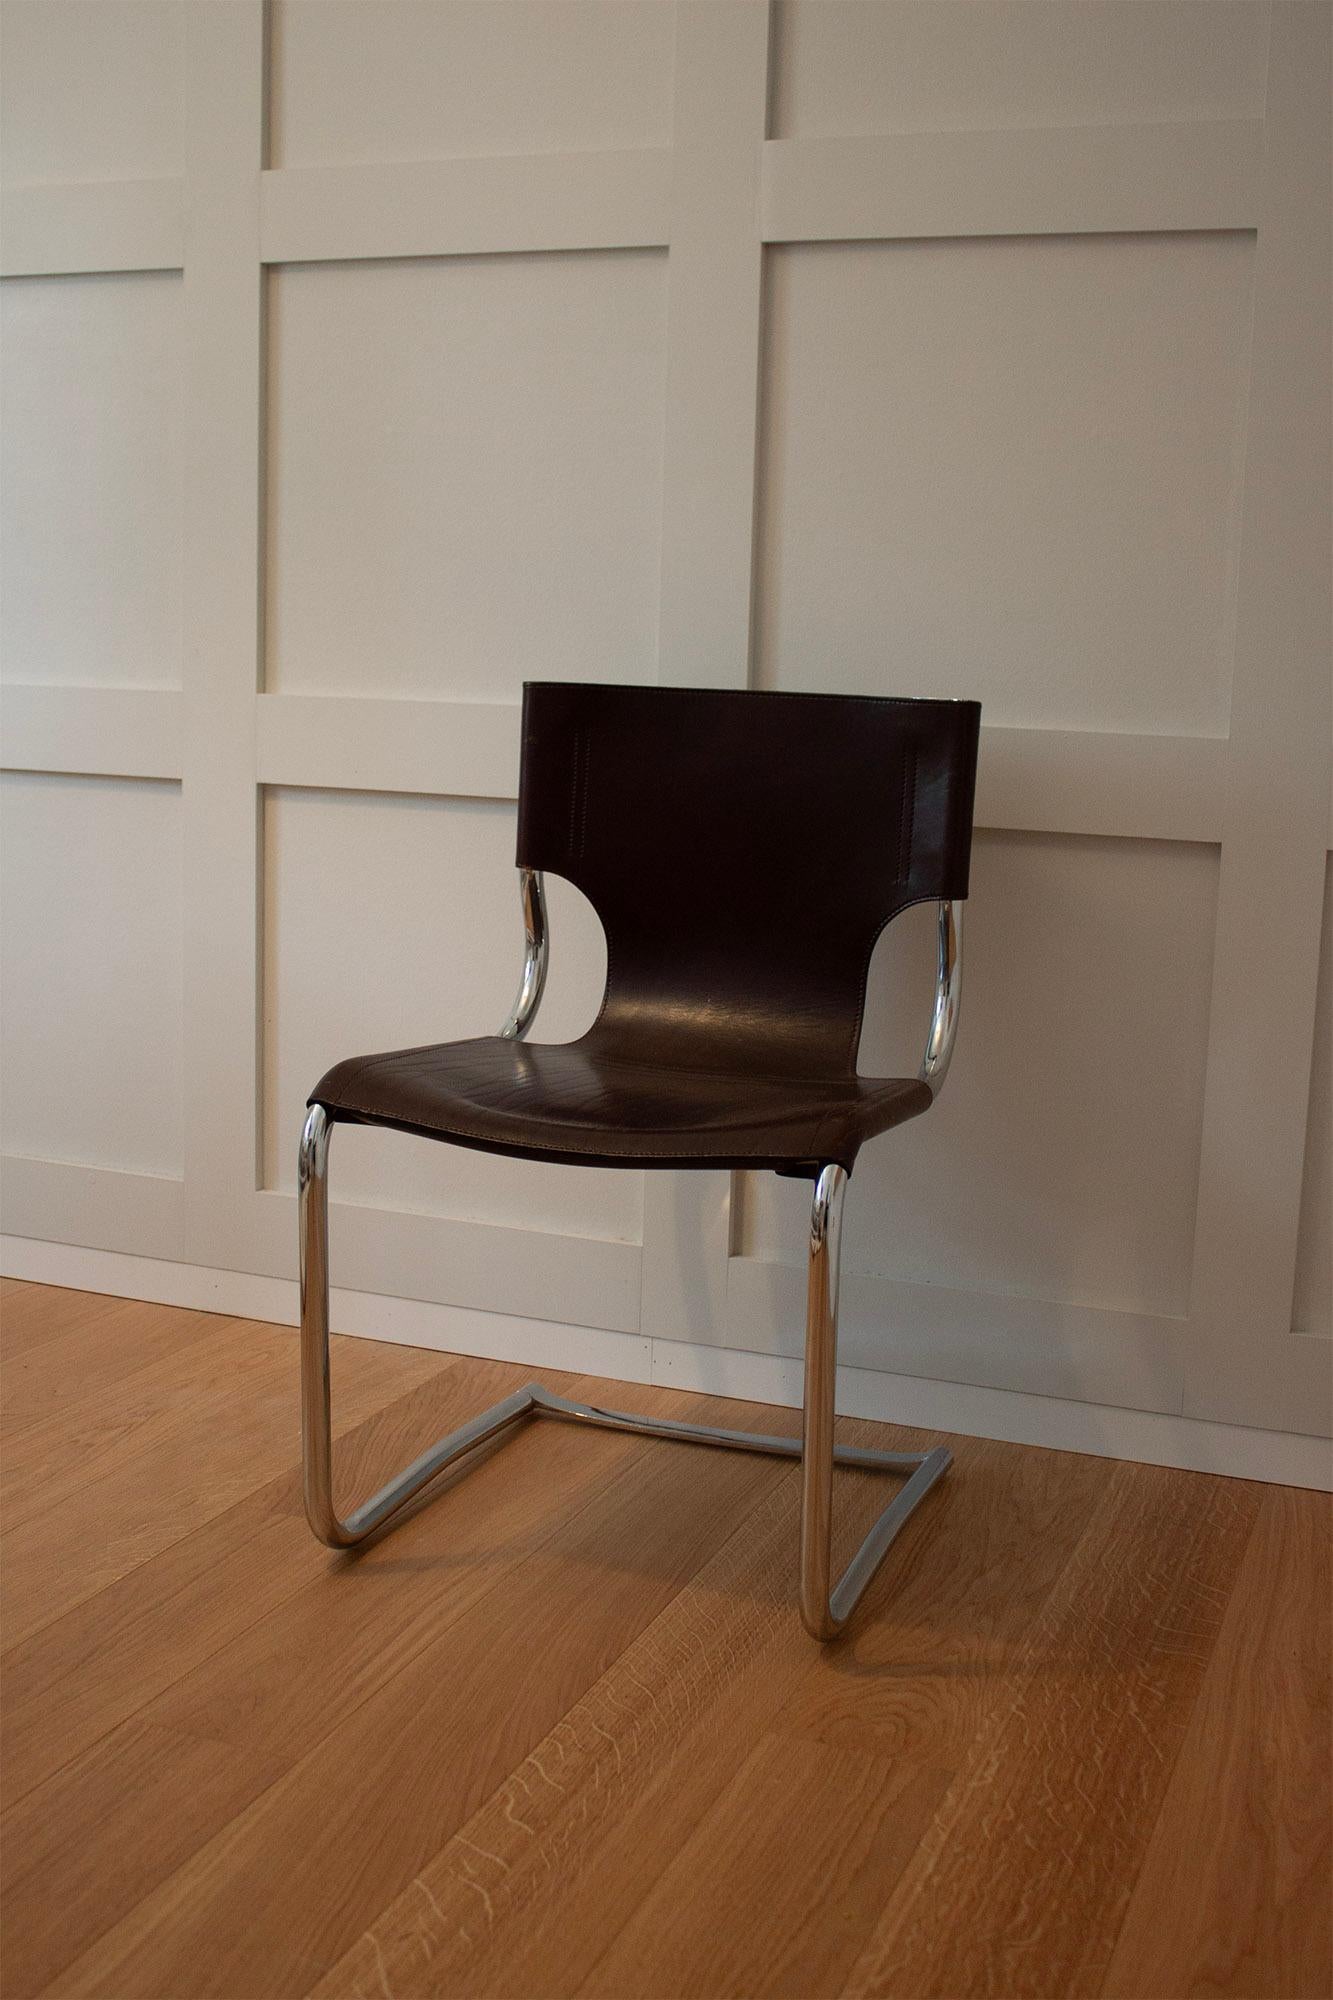 Cette chaise de bureau ou de salle à manger italienne 920C, conçue par Carlo Bartoli et produite par Tisettana vers 1970, est disponible. Cette chaise se distingue par sa qualité de fabrication et son souci du détail. Le cadre est en tube d'acier